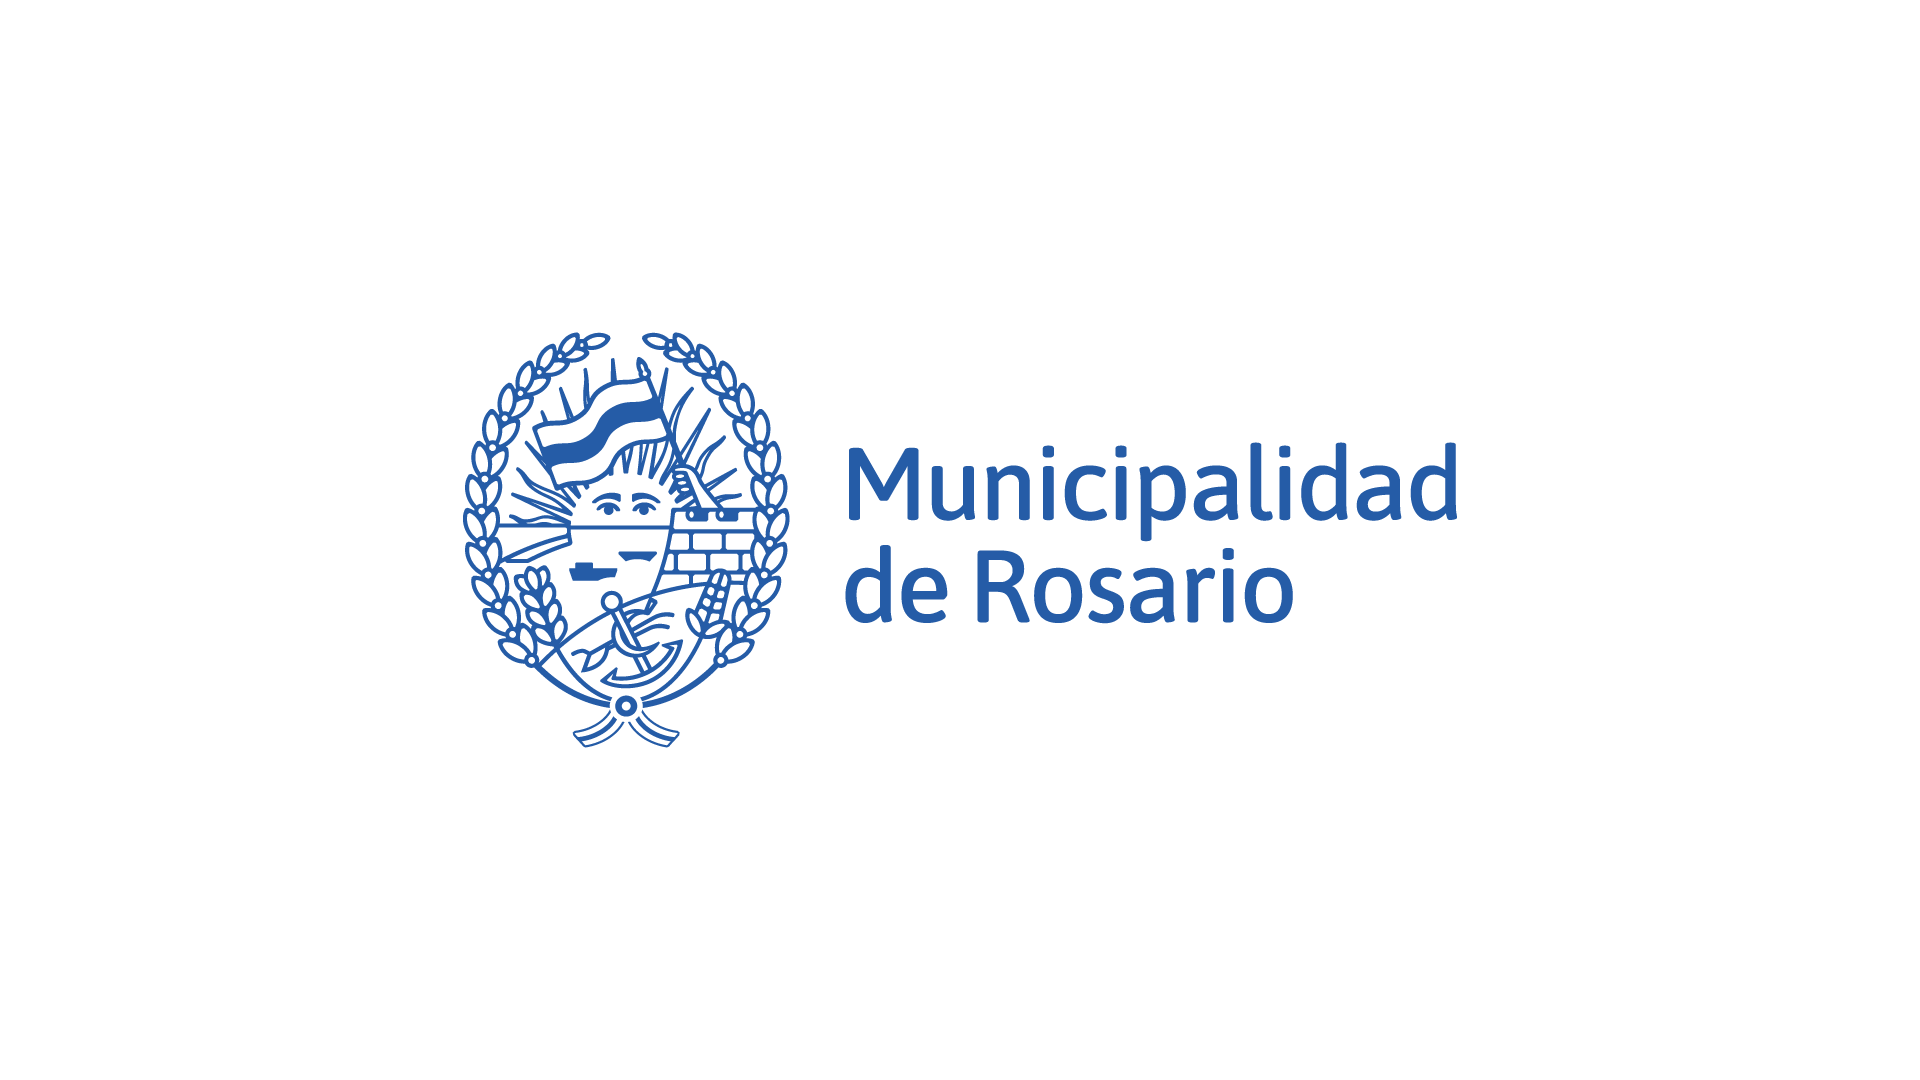 Municipalidad de Rosario